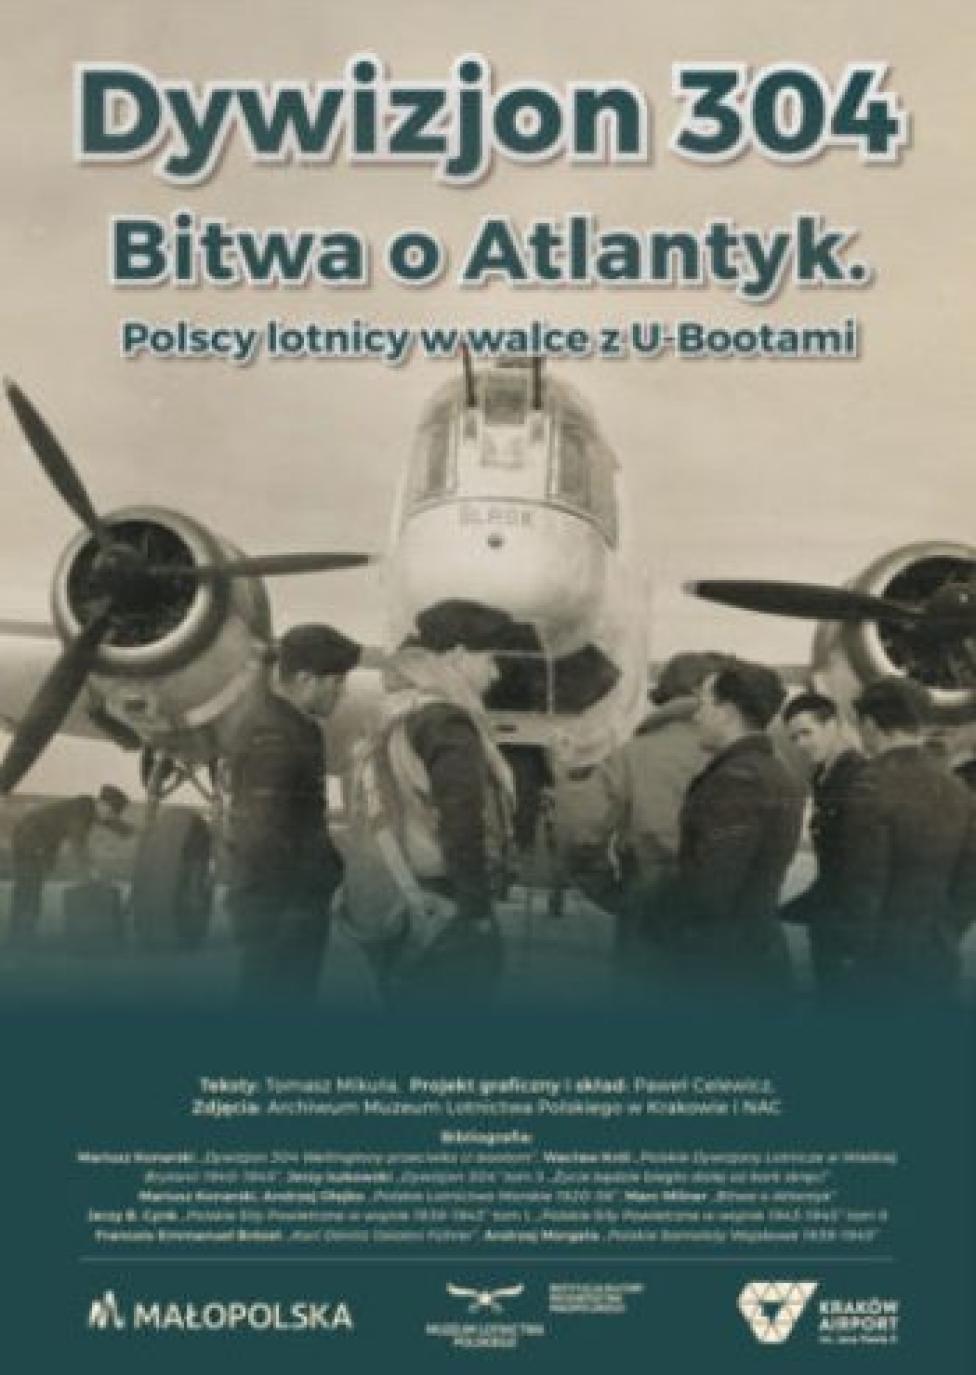 Wystawa Polscy lotnicy w walce z U-bootami w Muzeum Lotnictwa Polskiego (fot. muzeumlotnictwa.pl)